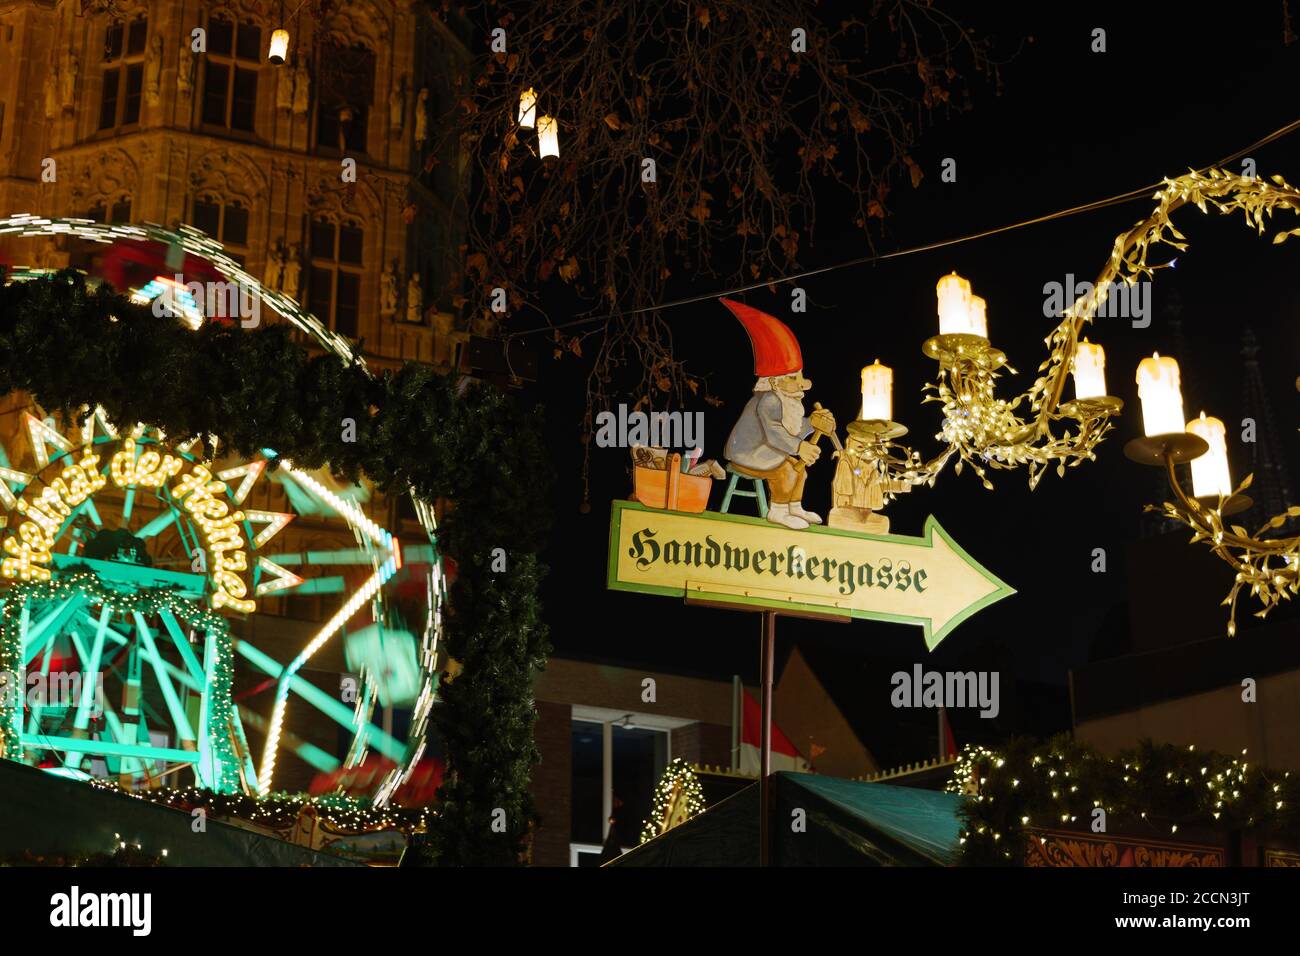 L'atmosphère nocturne et l'attention sélective au panneau du Père Noël éclairent les stands à Heumarkt, célèbre place du marché de Noël à Cologne, en Allemagne. Banque D'Images